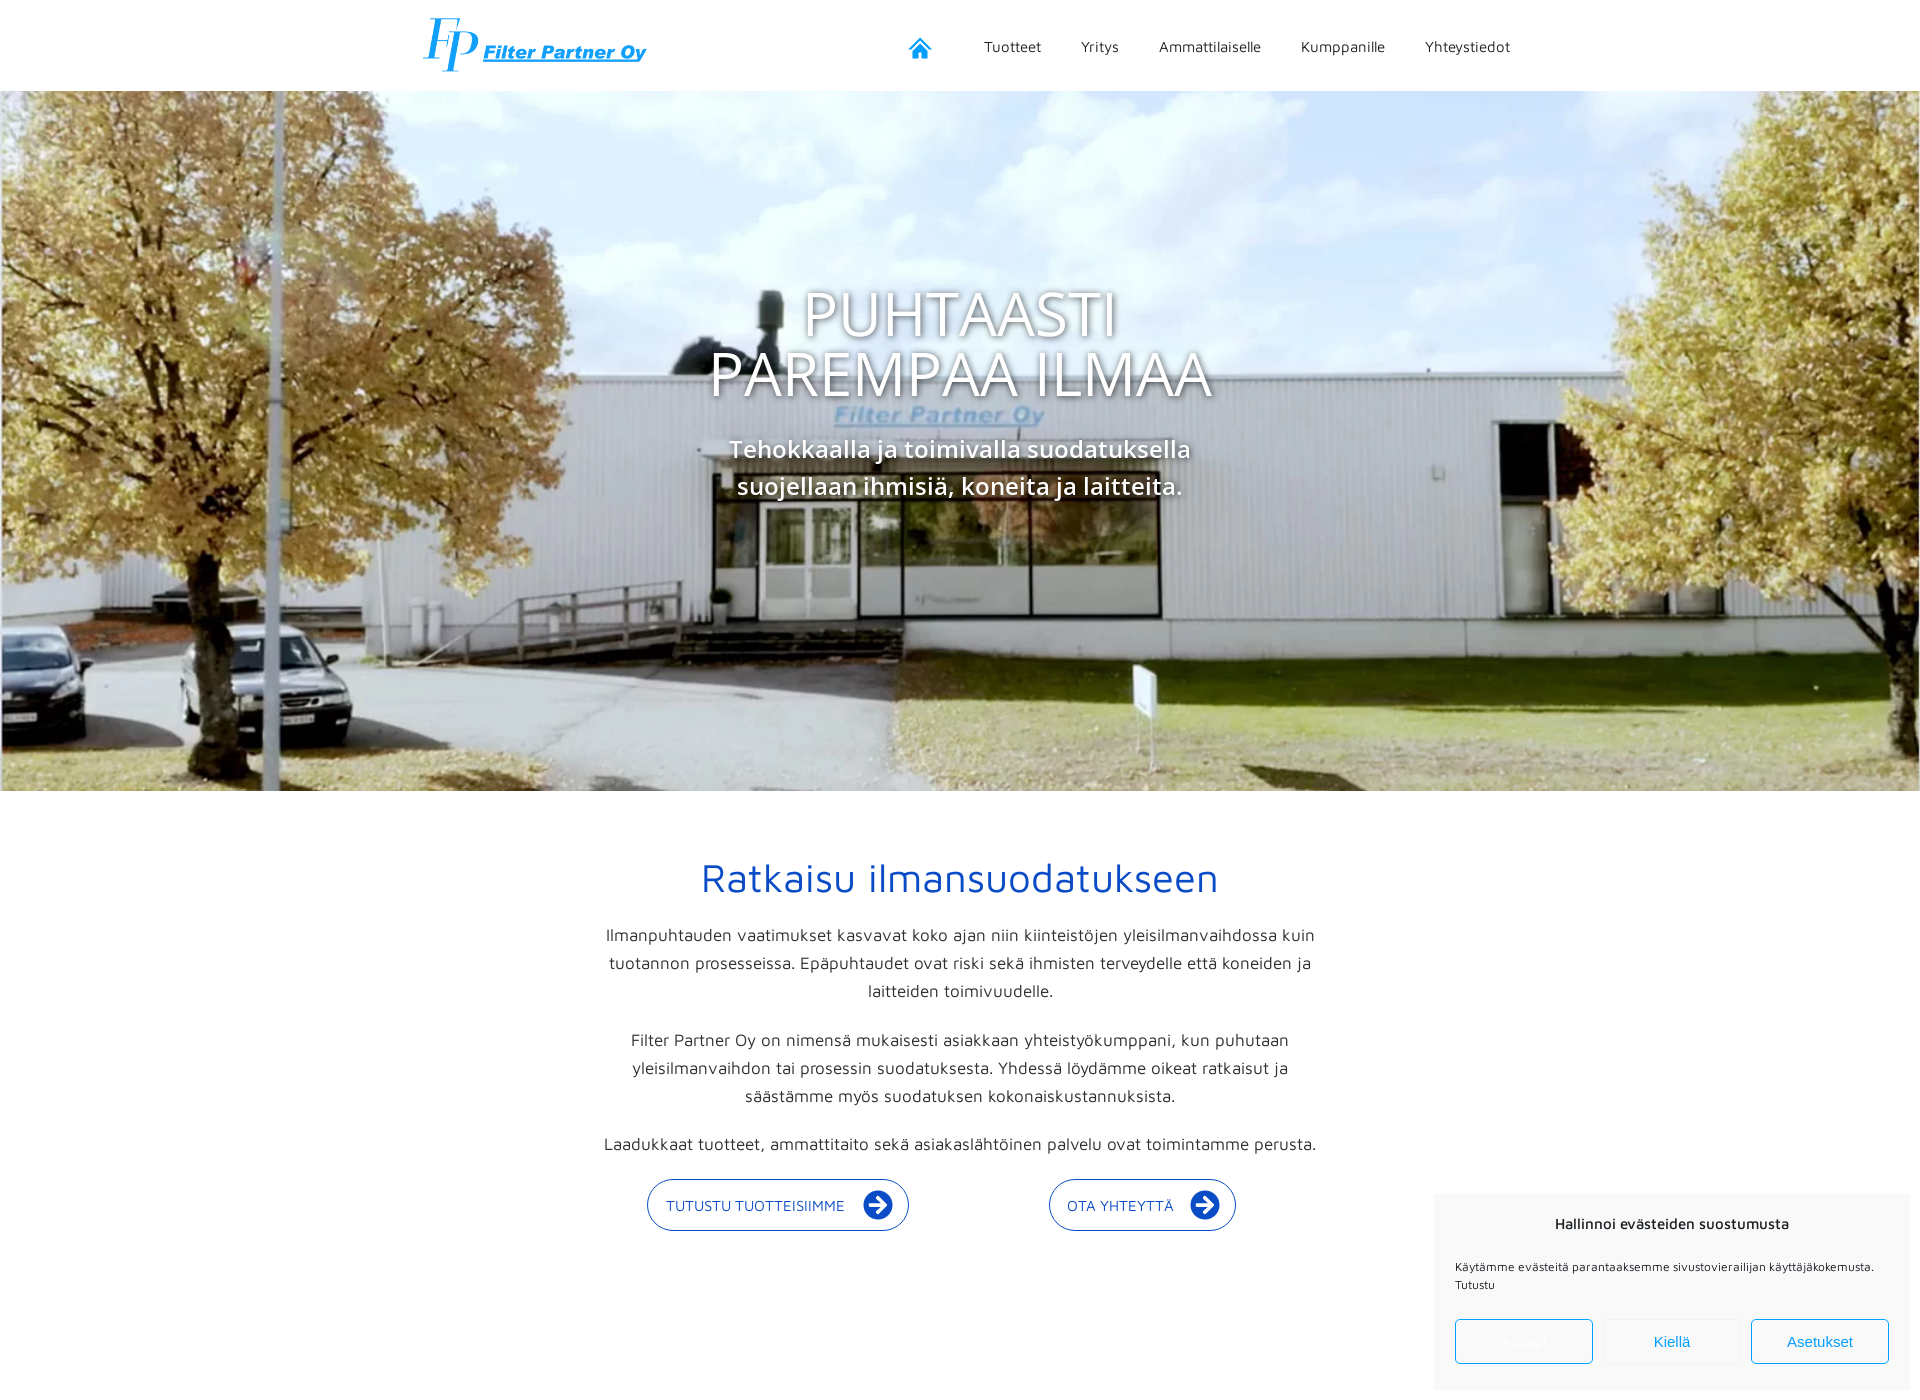 Skärmdump för filterpartner.fi